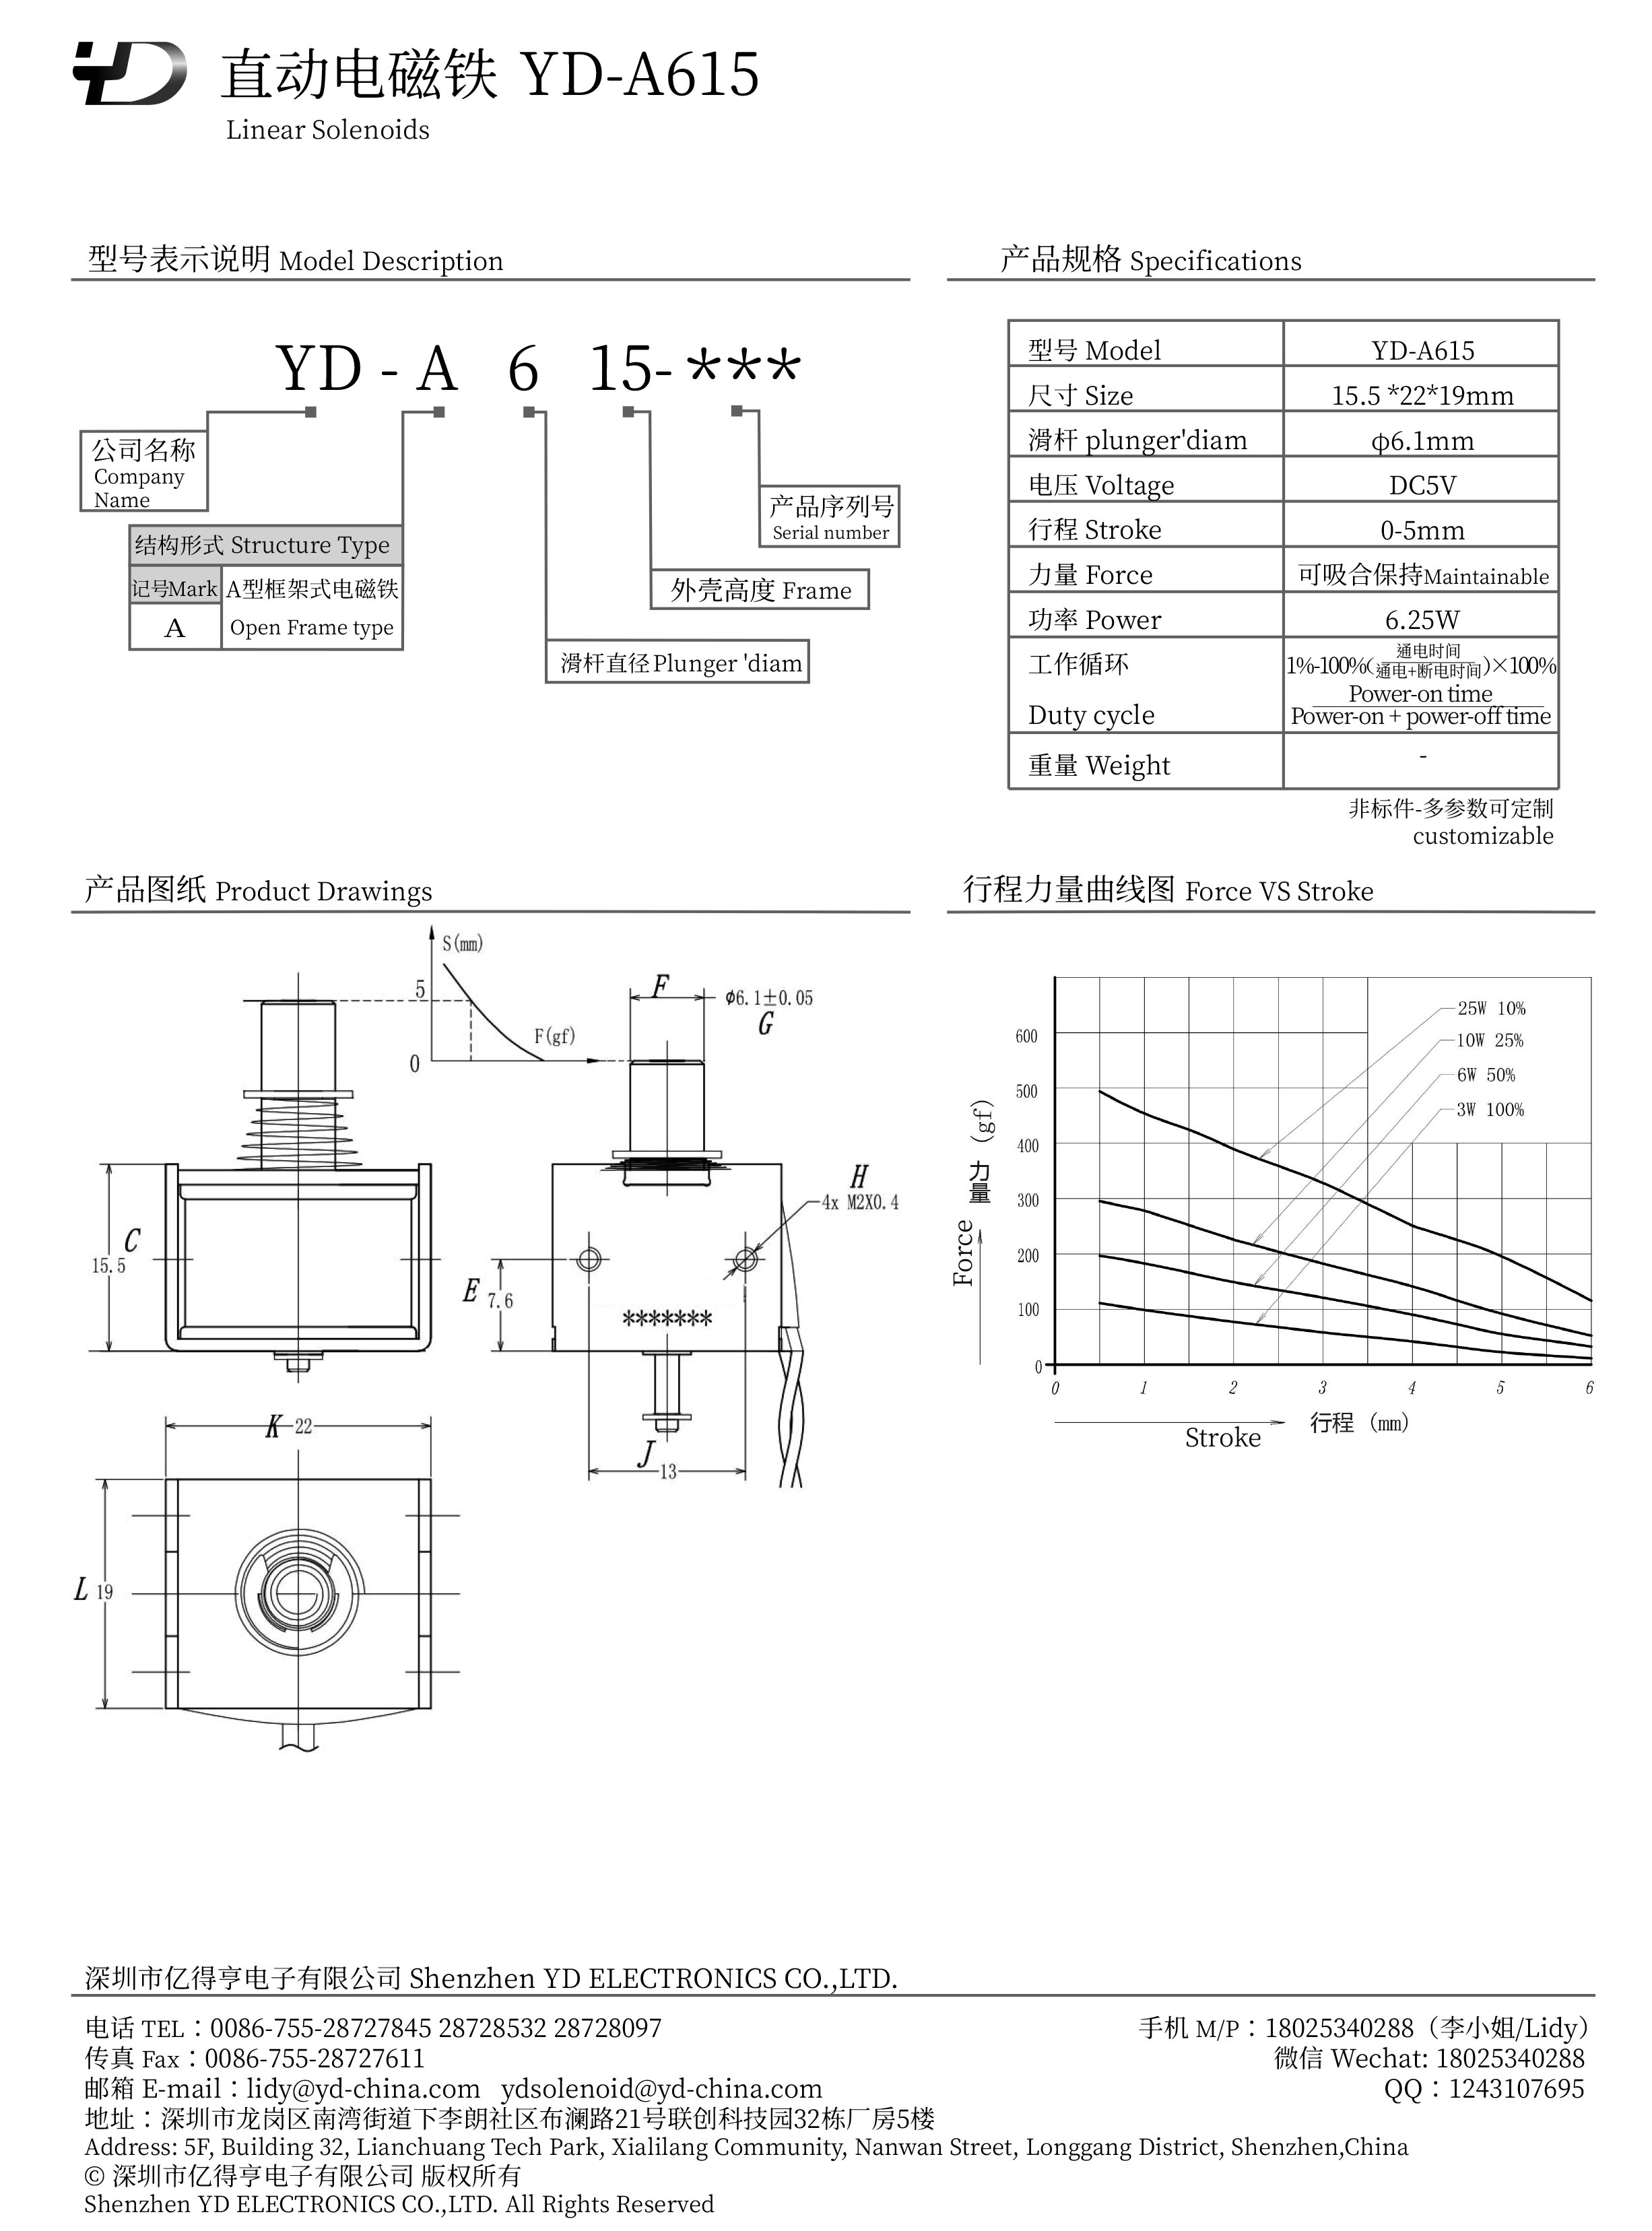 YD-A615-PDF.jpg